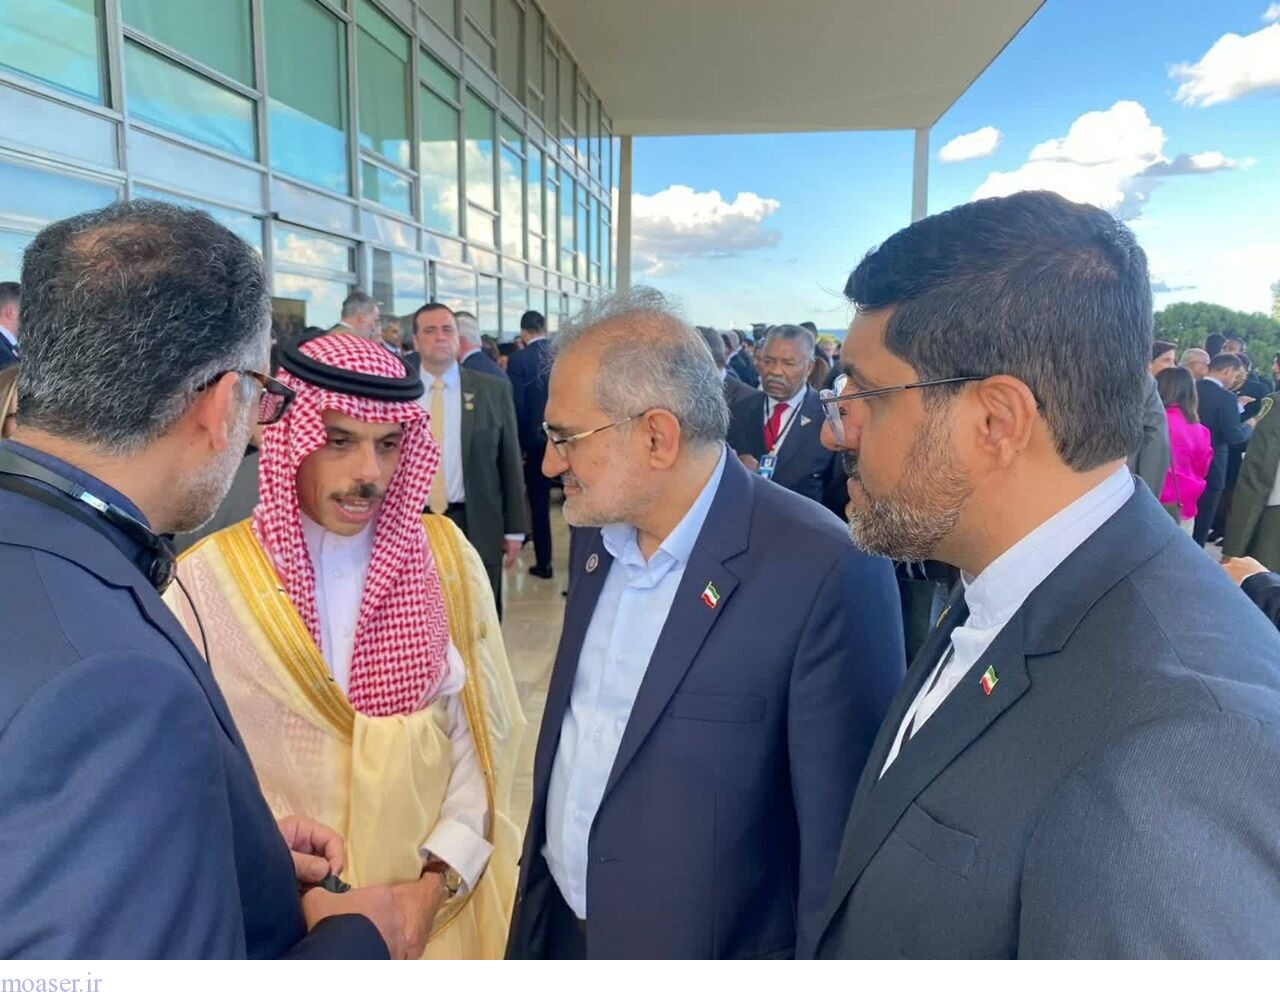 دیدار وزیر خارجه عربستان با معاون پارلمانی رئیسی در برزیل